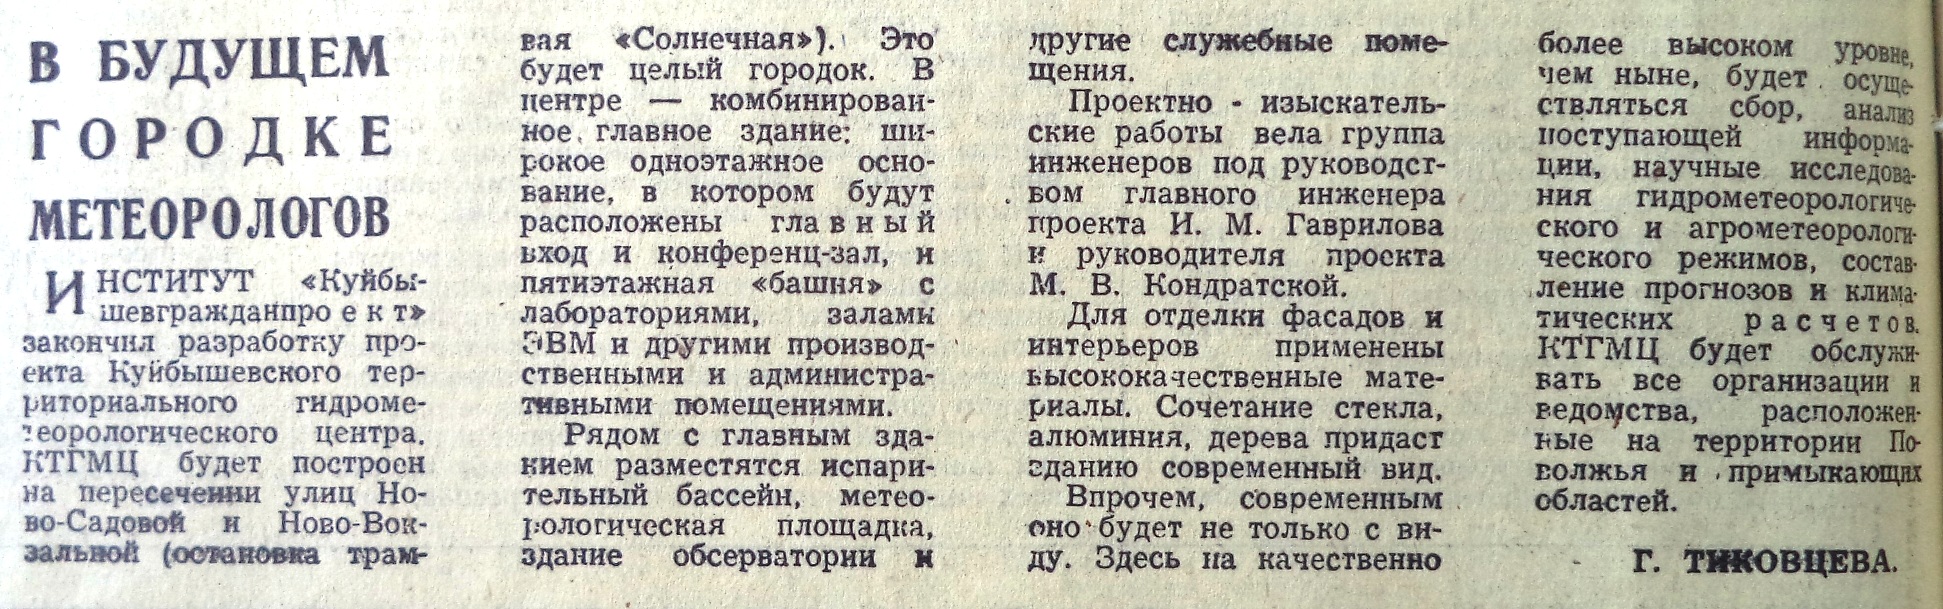 Ново-Садовая-ФОТО-79-ВЗя-1974-02-07-будущий Метеоцентр